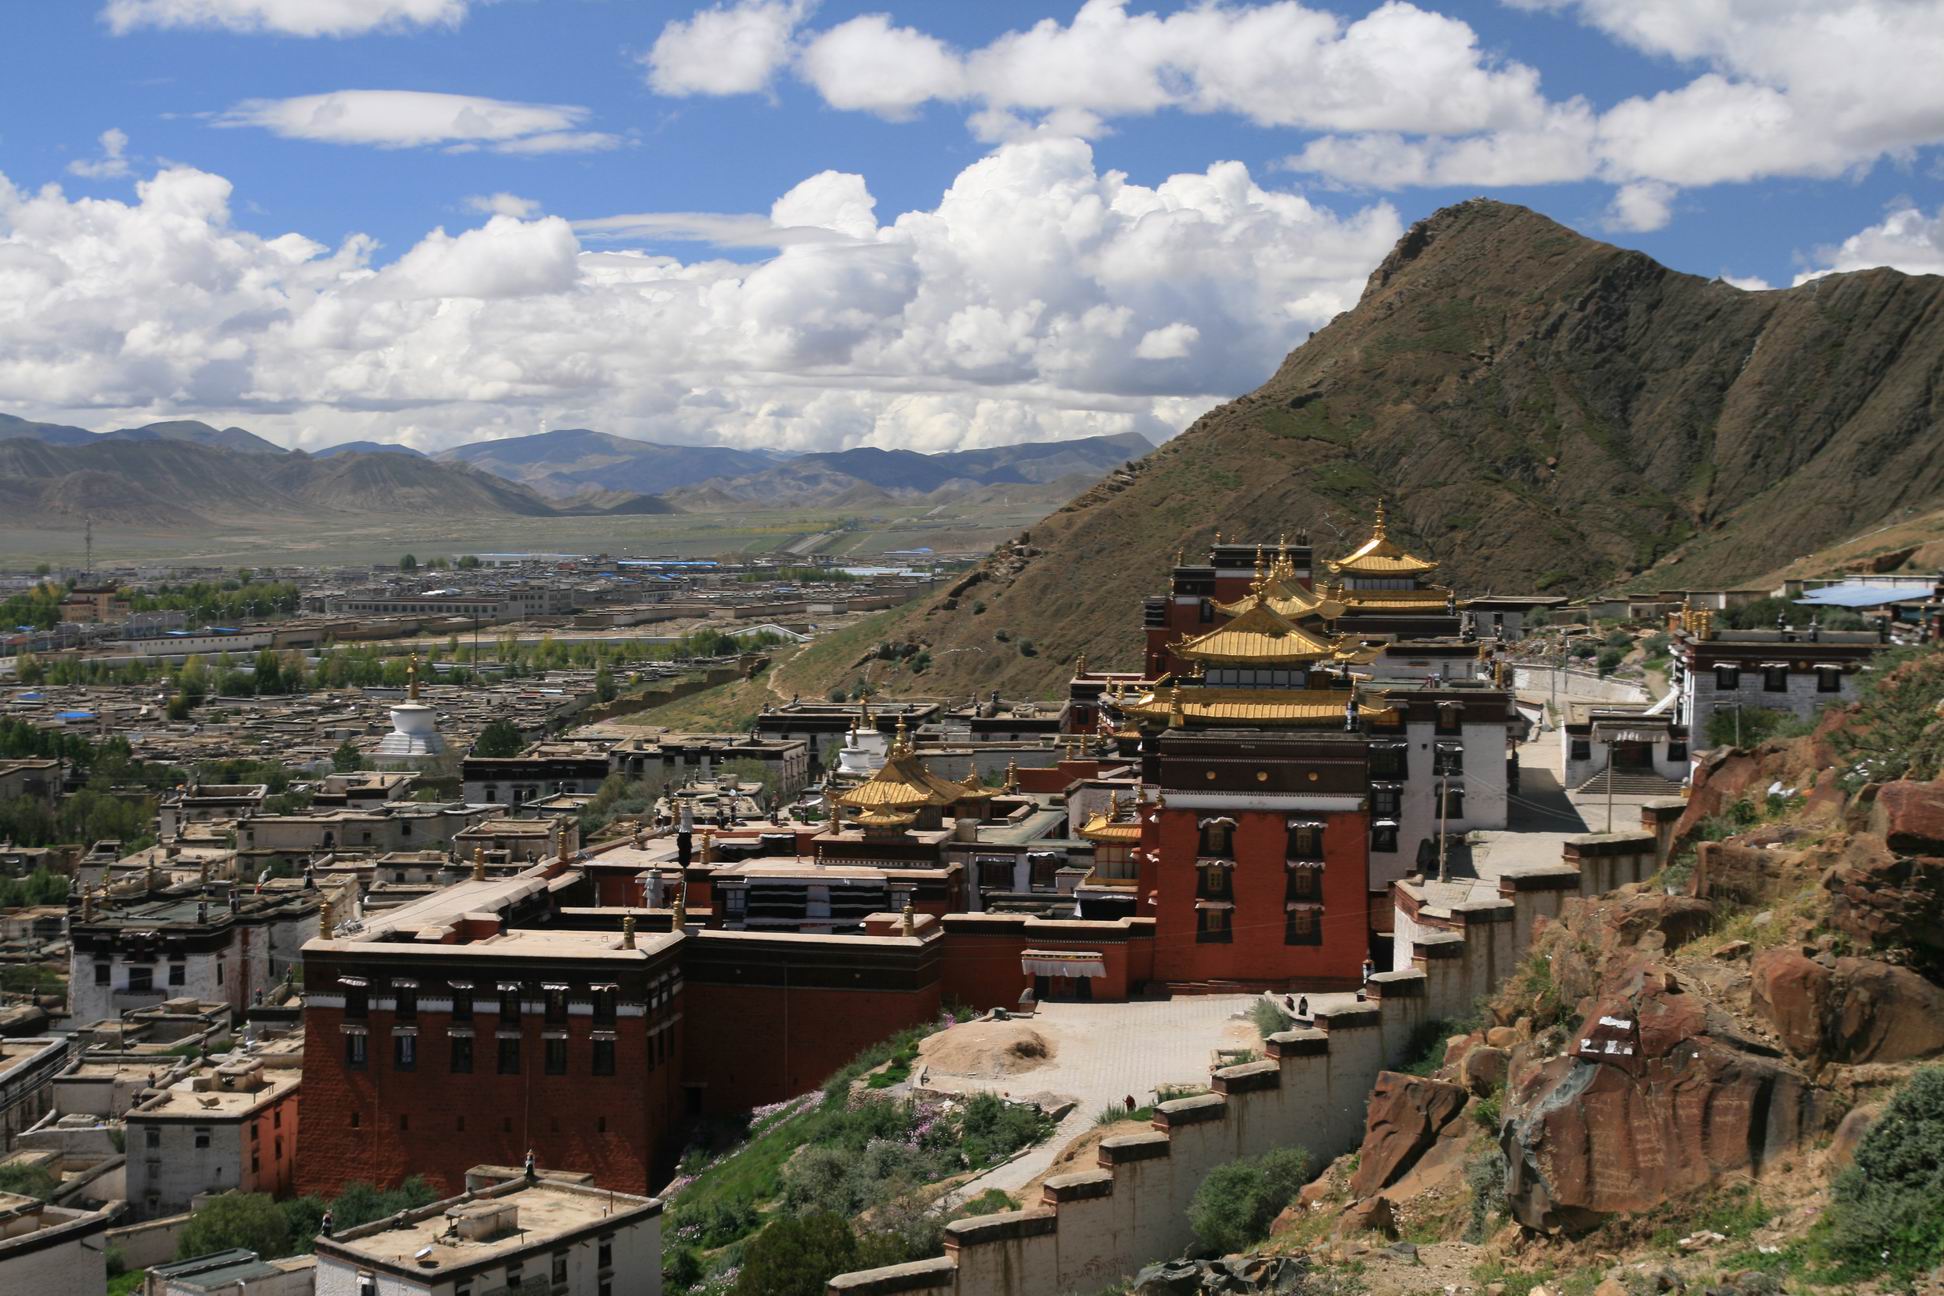 Tashi Lhunpo Monastery